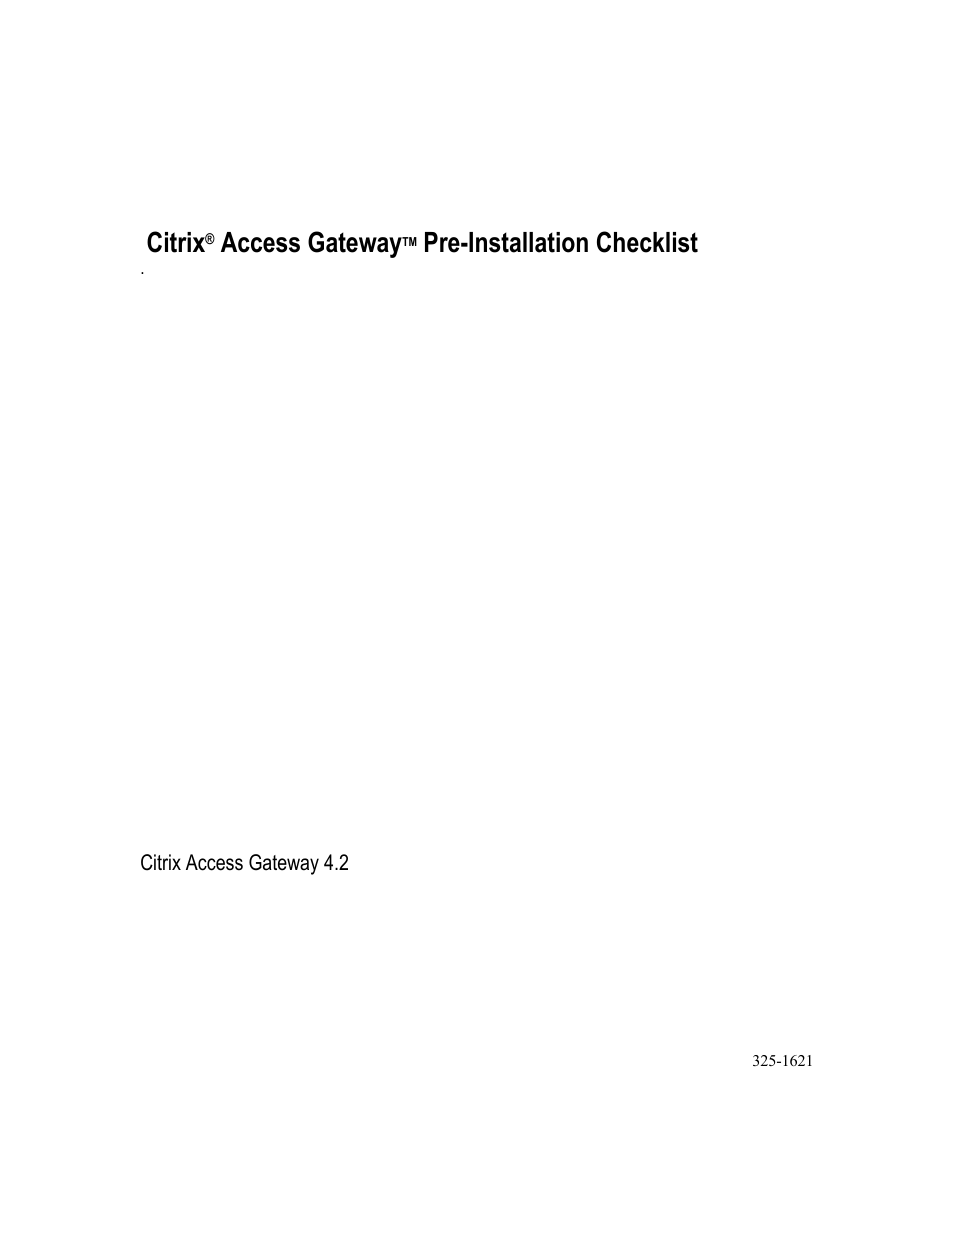 Citrix Access Gateway 4.2